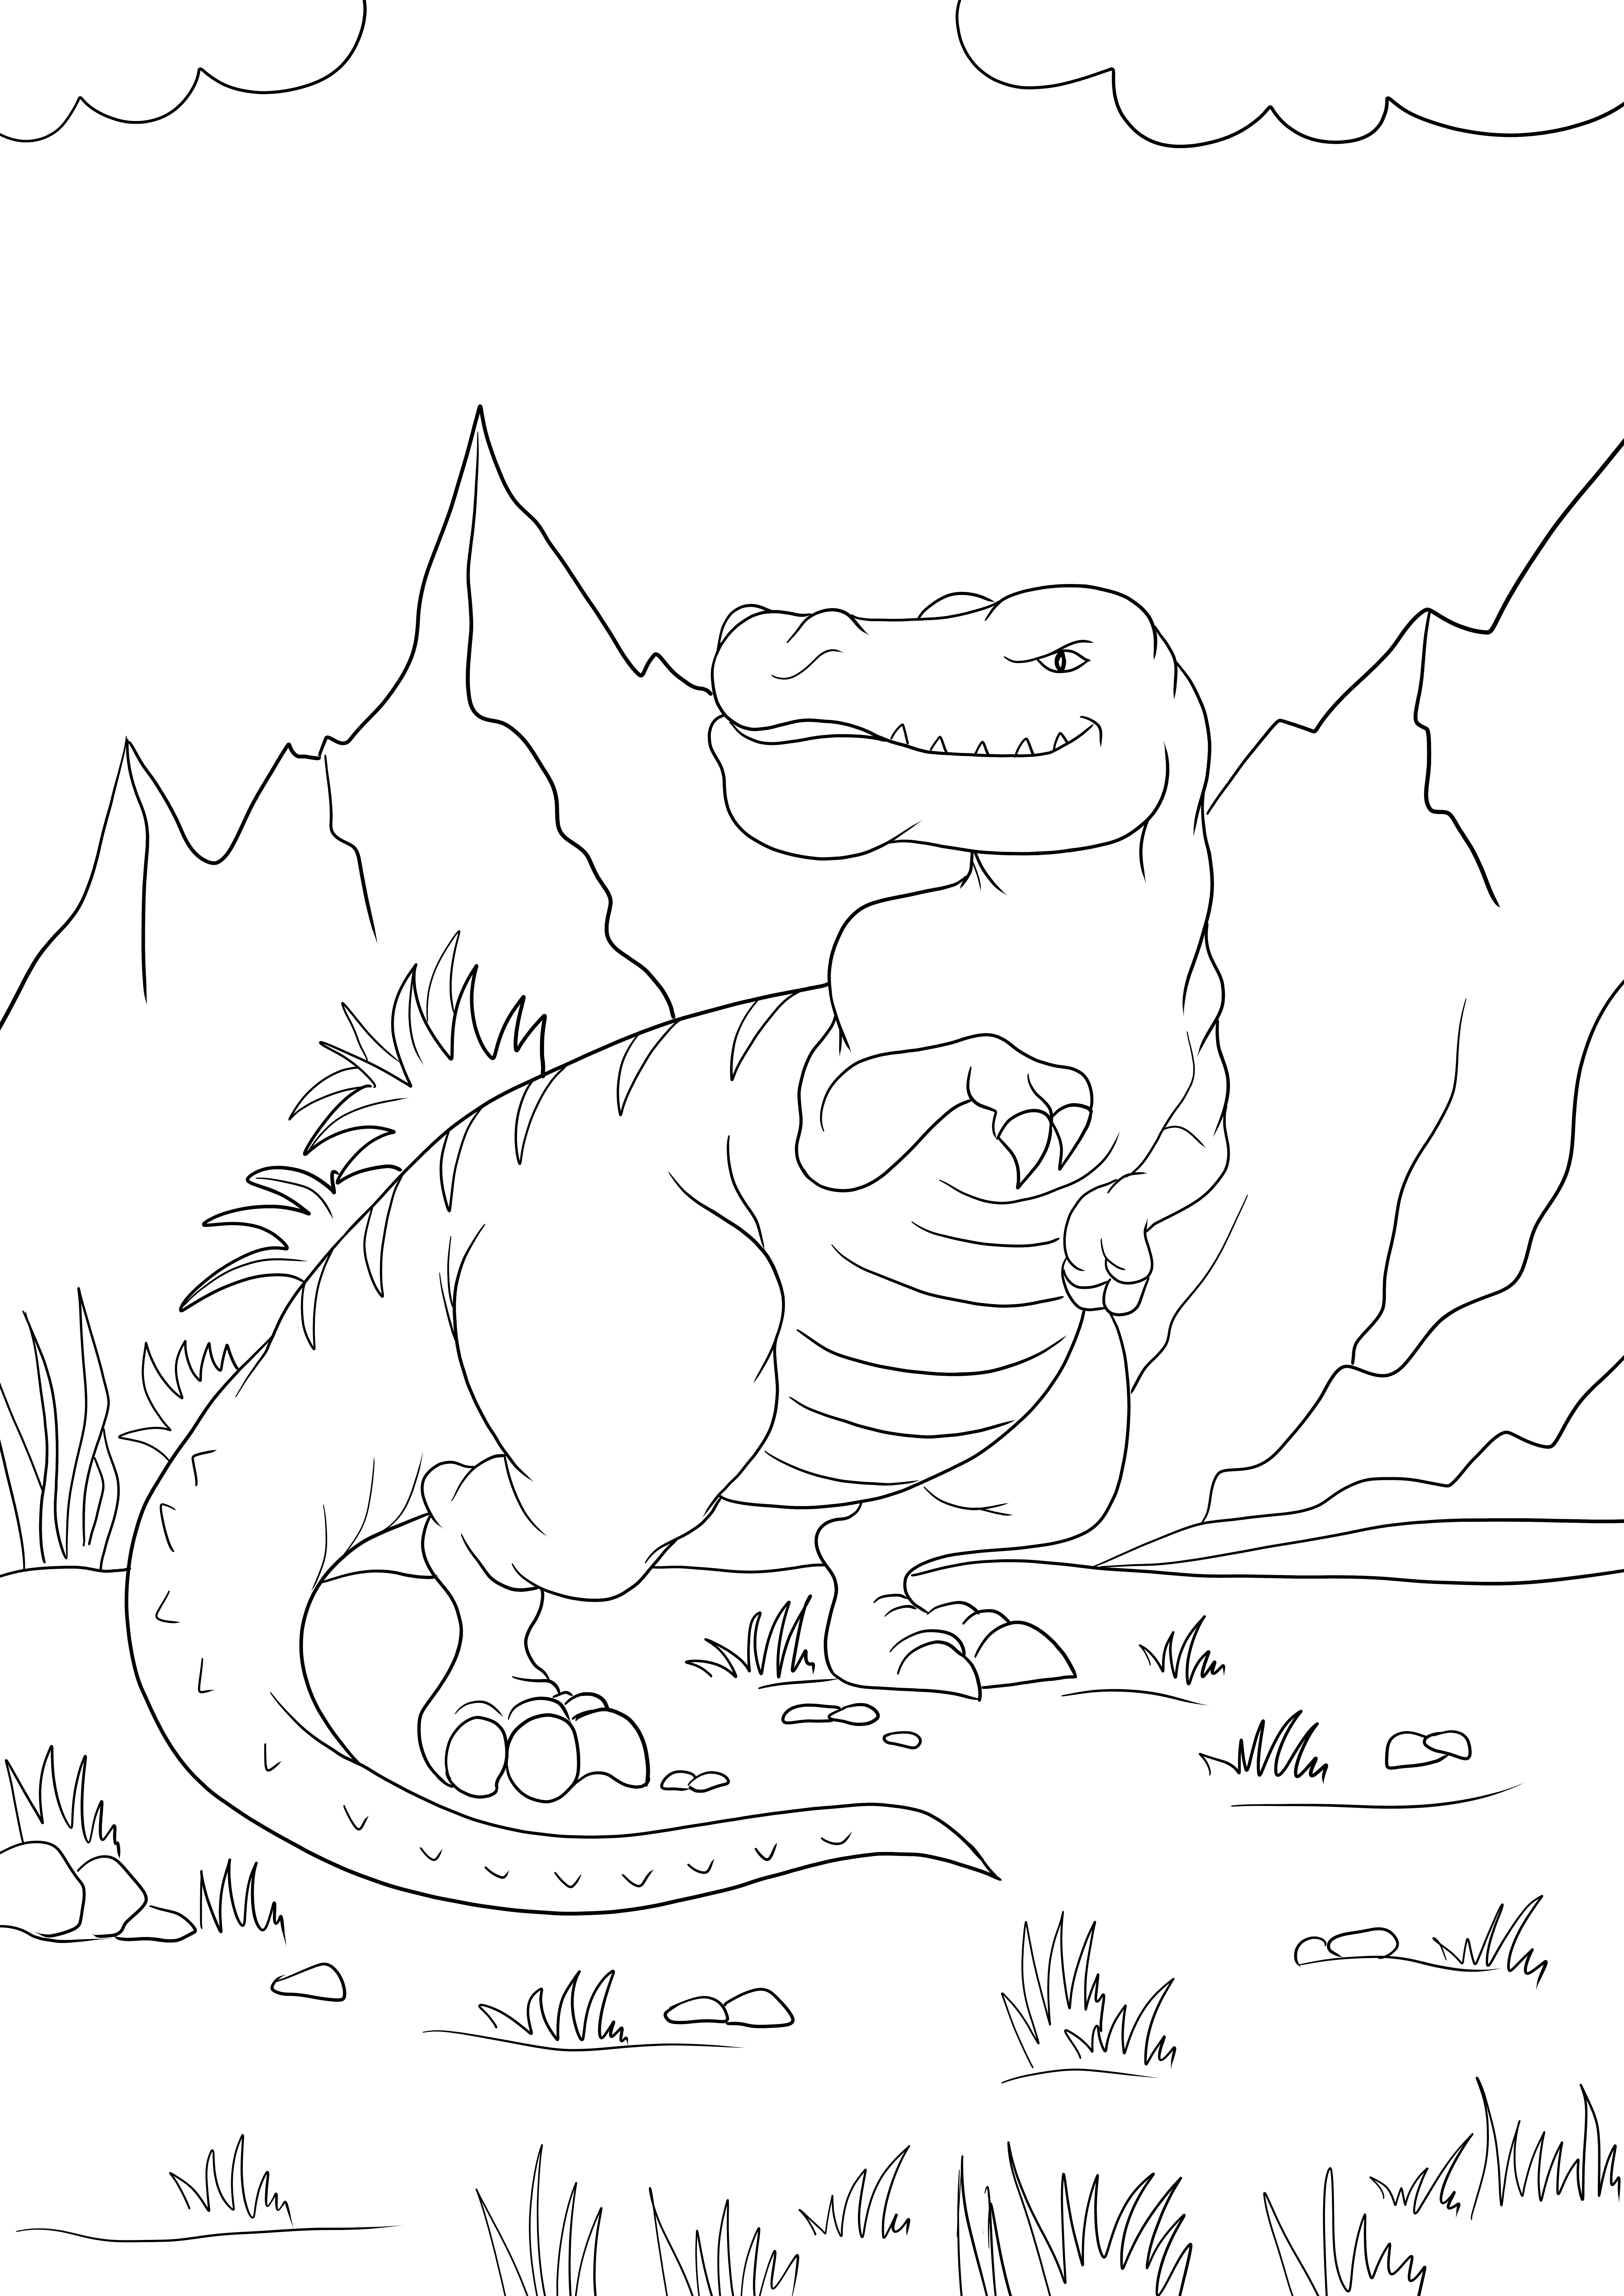 Tyrannosaurus Rex, çocuklar için ücretsiz olarak renkli yazdırılabilir